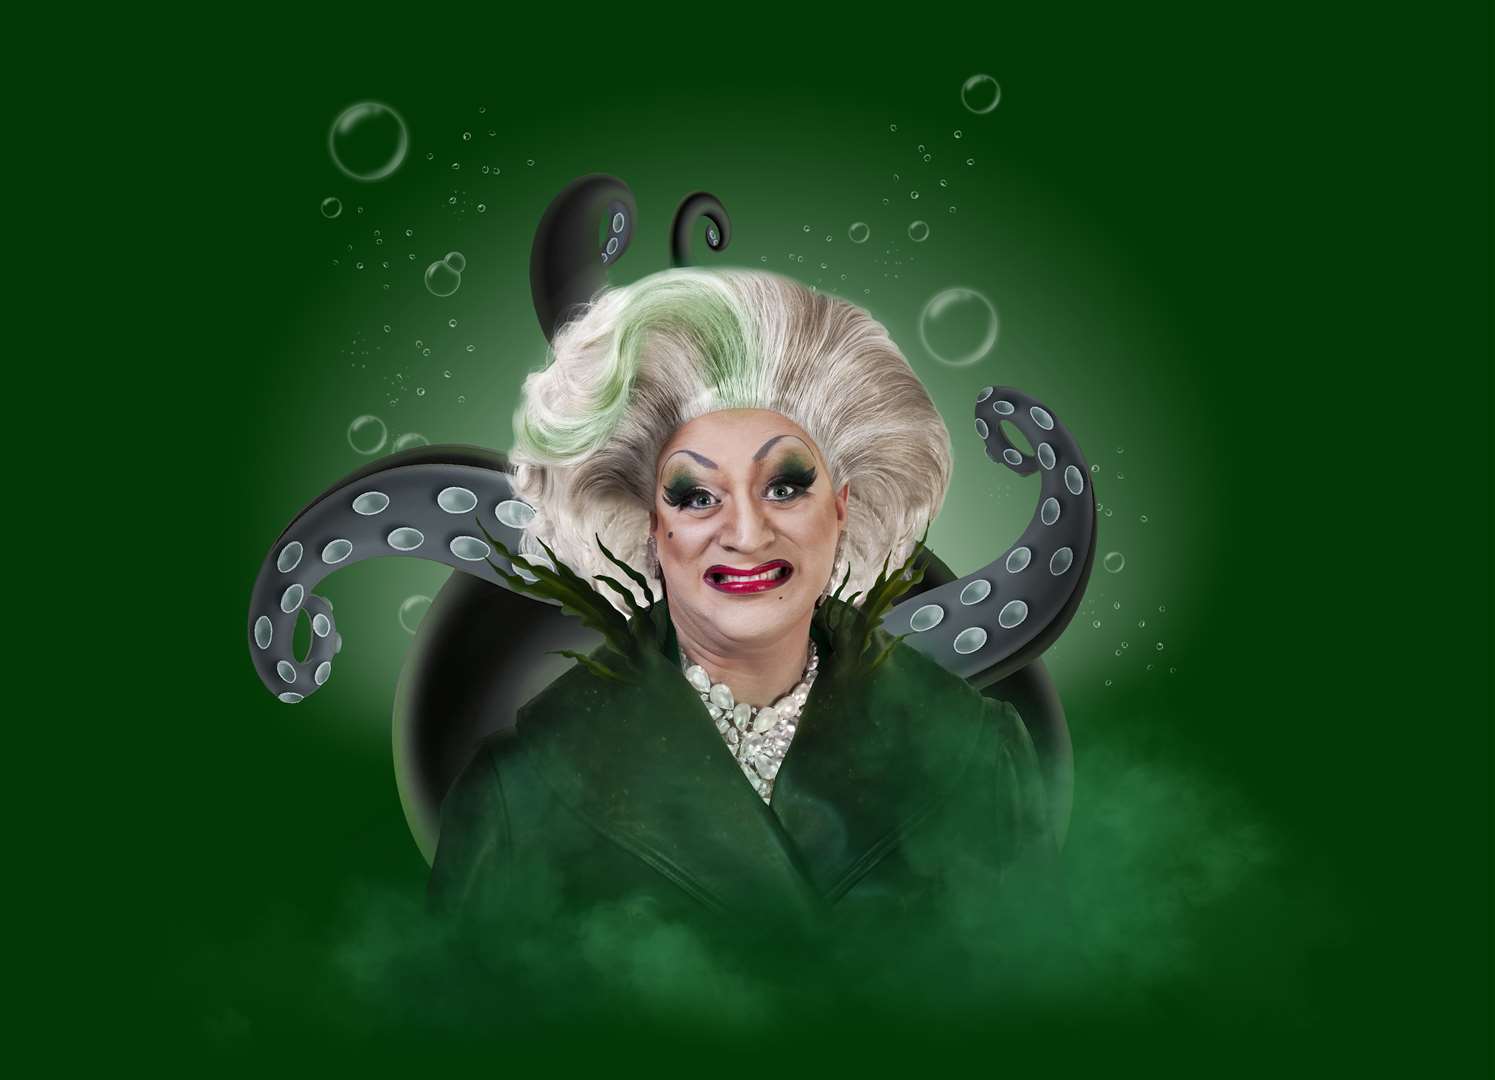 Myra Dubois as Ursula in The Little Mermaid